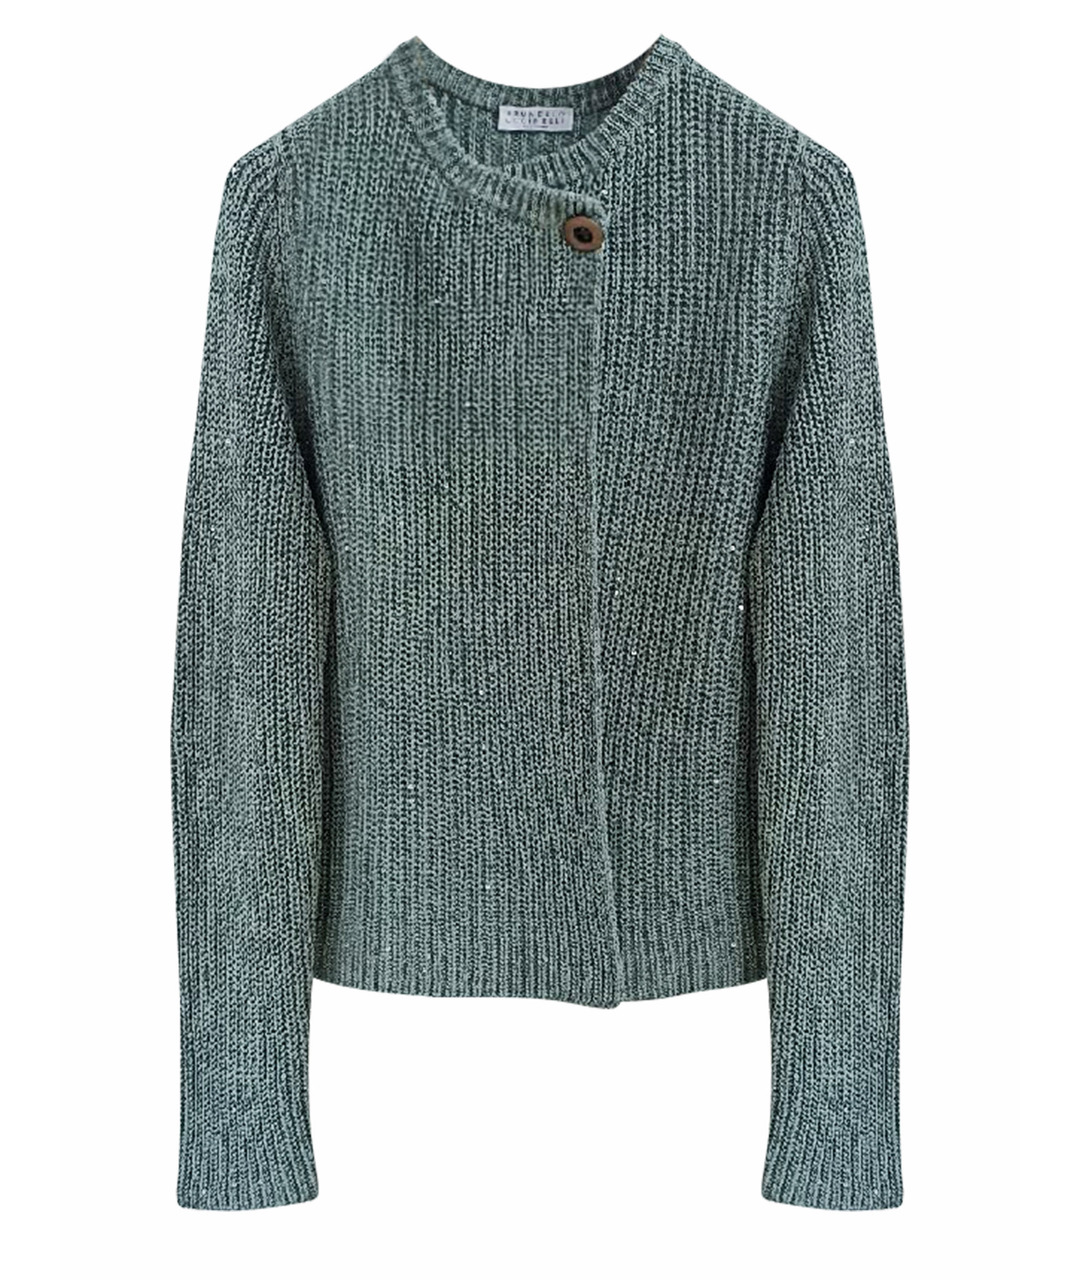 BRUNELLO CUCINELLI Зеленый хлопковый джемпер / свитер, фото 1